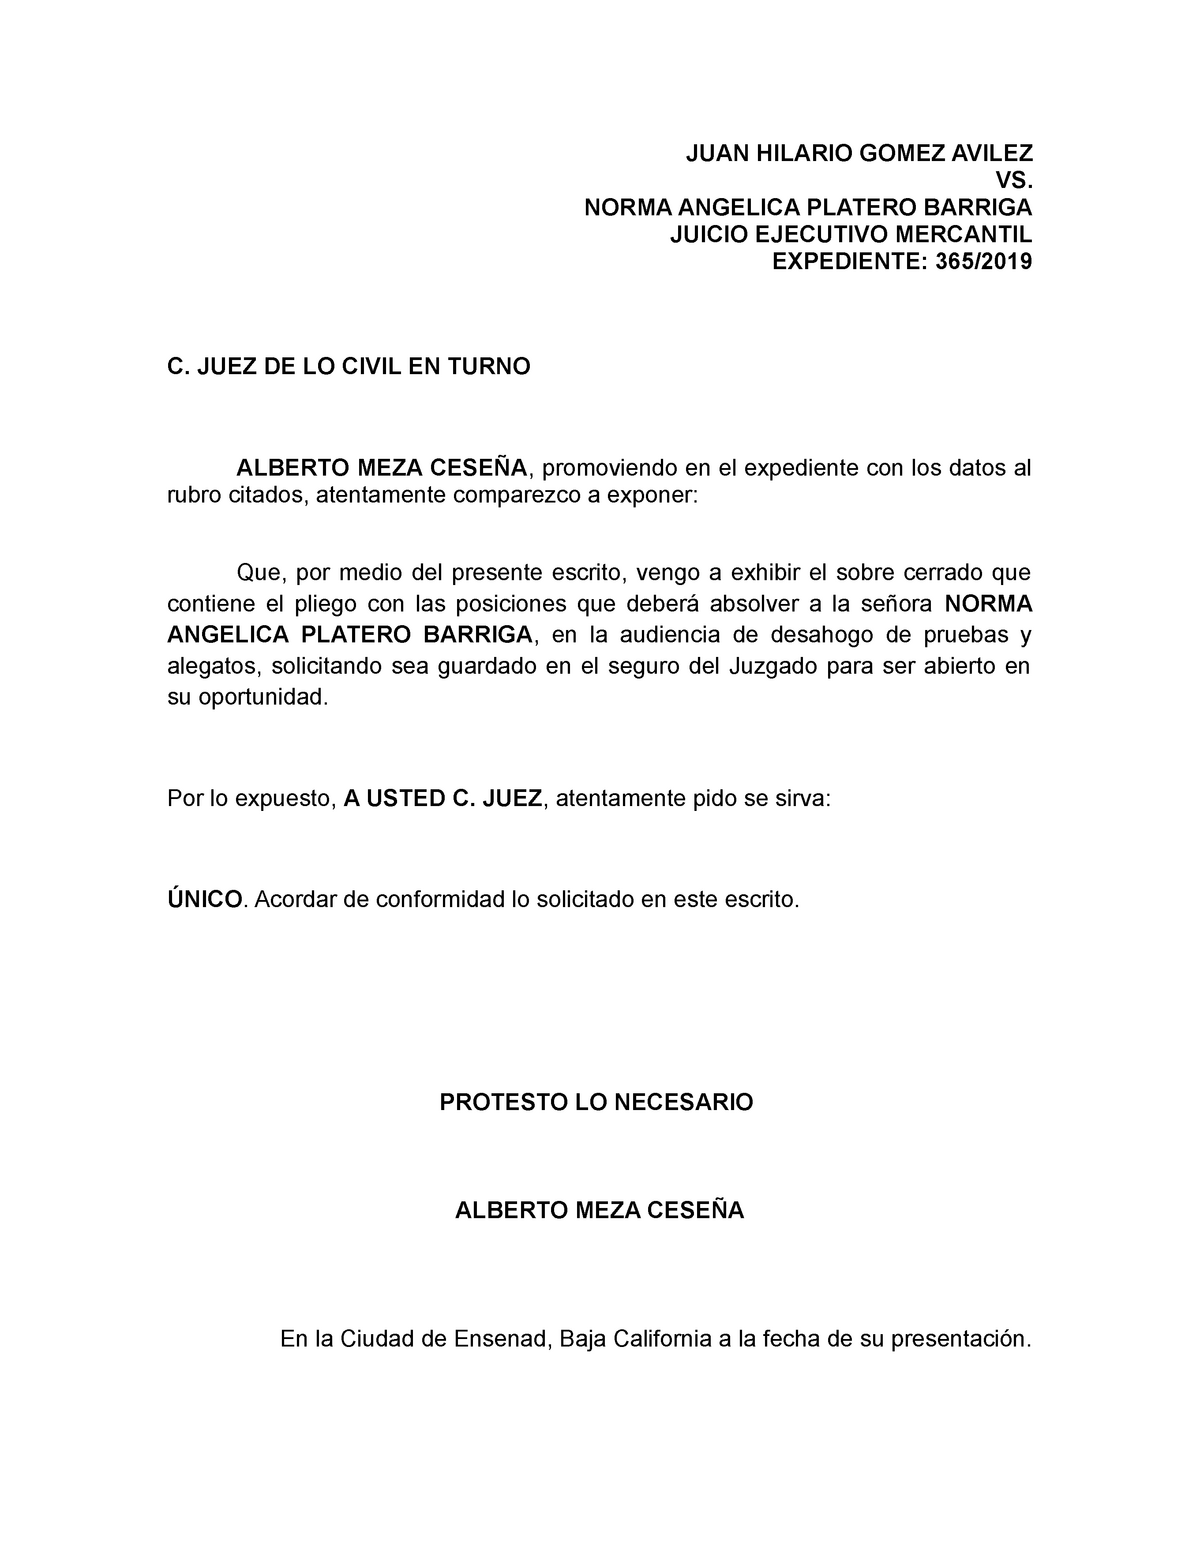 Escrito exhibiendo pliego de posiciones - JUAN HILARIO GOMEZ AVILEZ VS.  NORMA ANGELICA PLATERO - Studocu